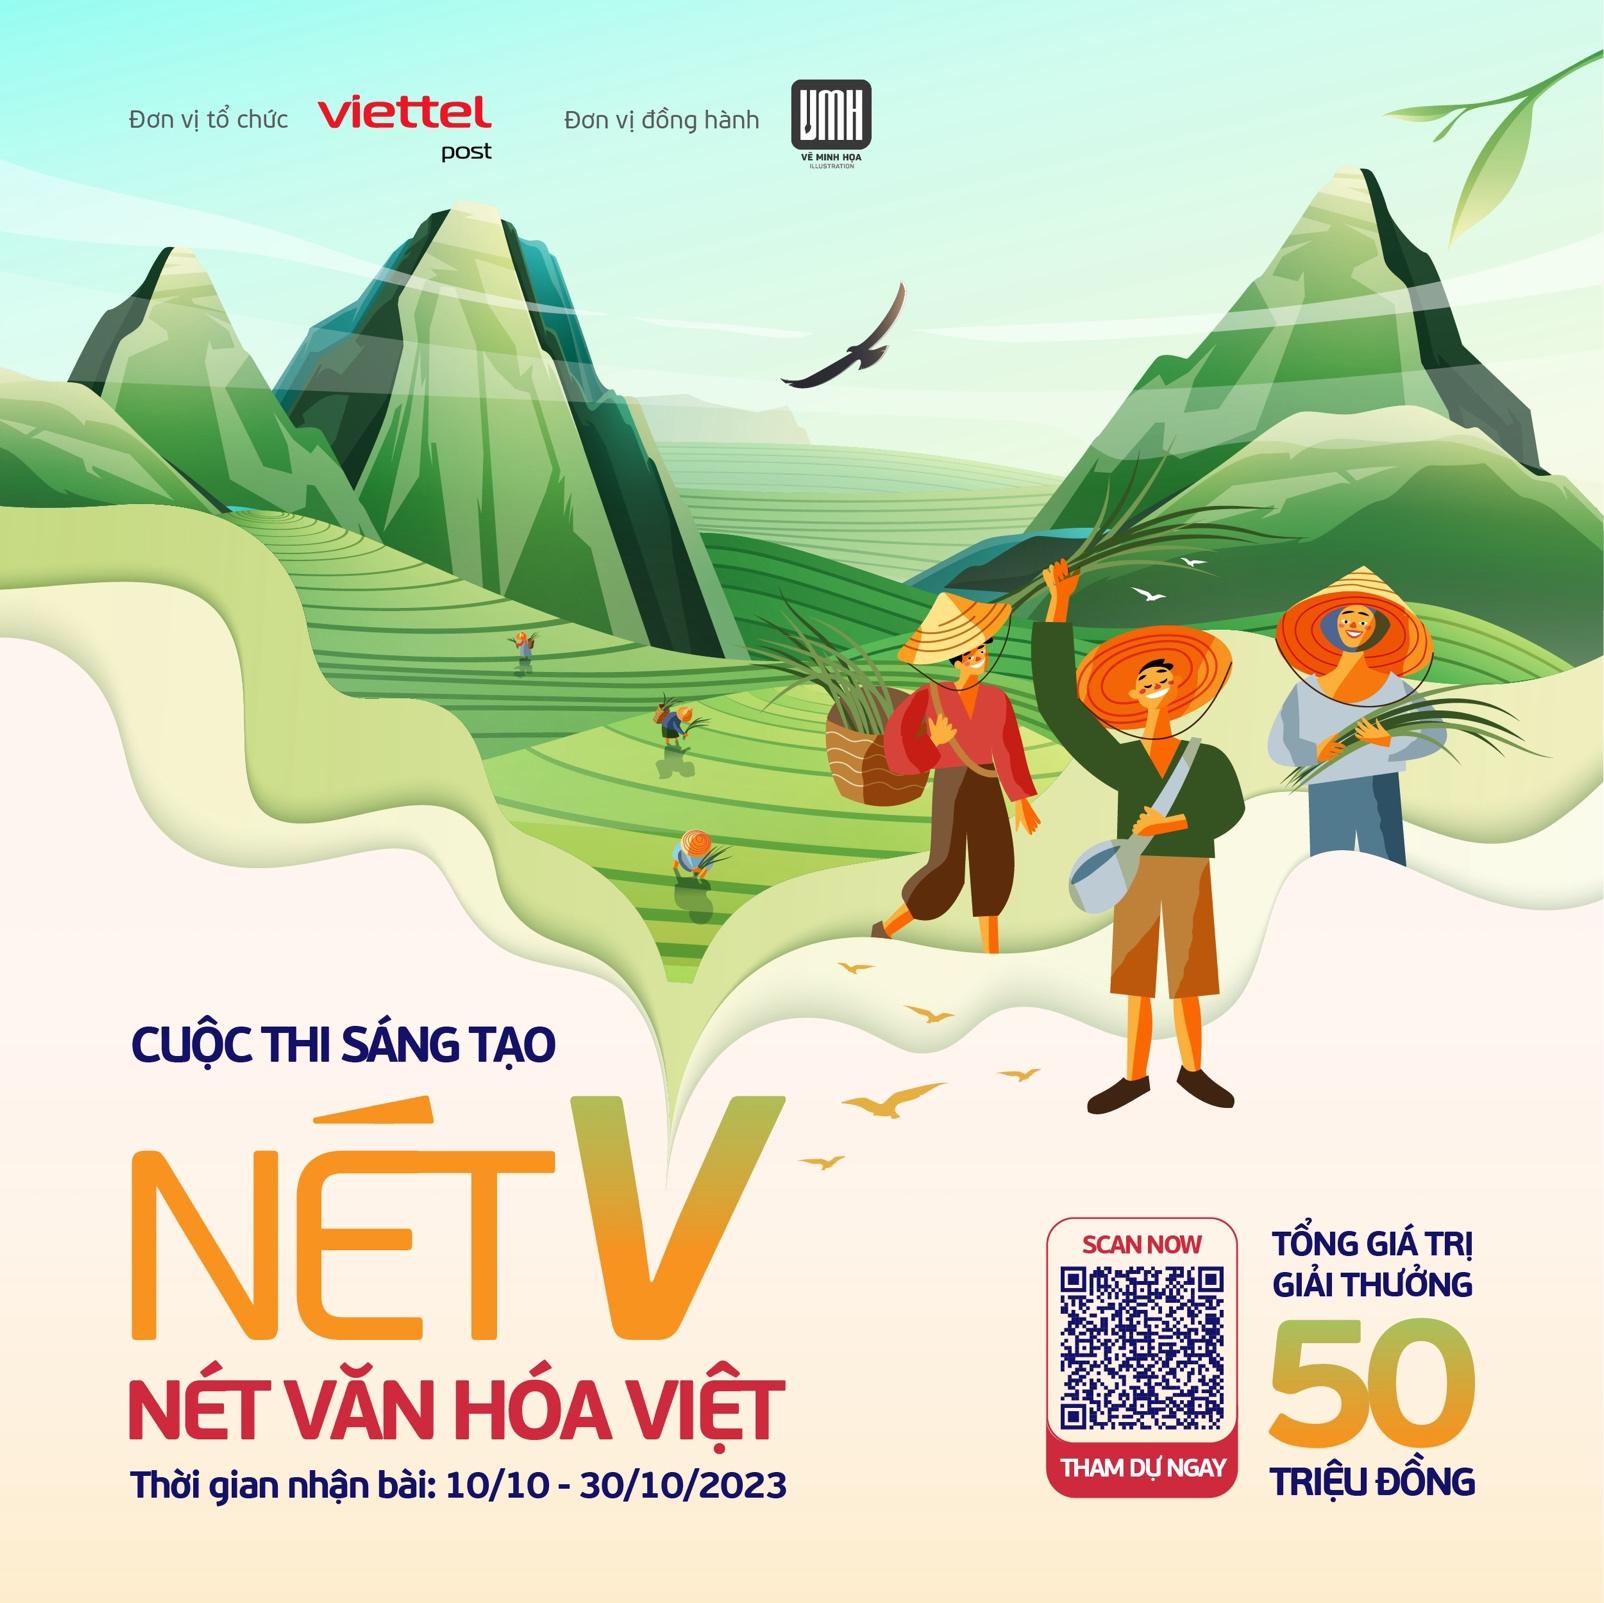 Sân chơi nghệ thuật “Nét V - Nét văn hóa Việt” của Viettel Post với tổng giá trị giải thưởng lên đến 50 triệu đồng - Ảnh 3.